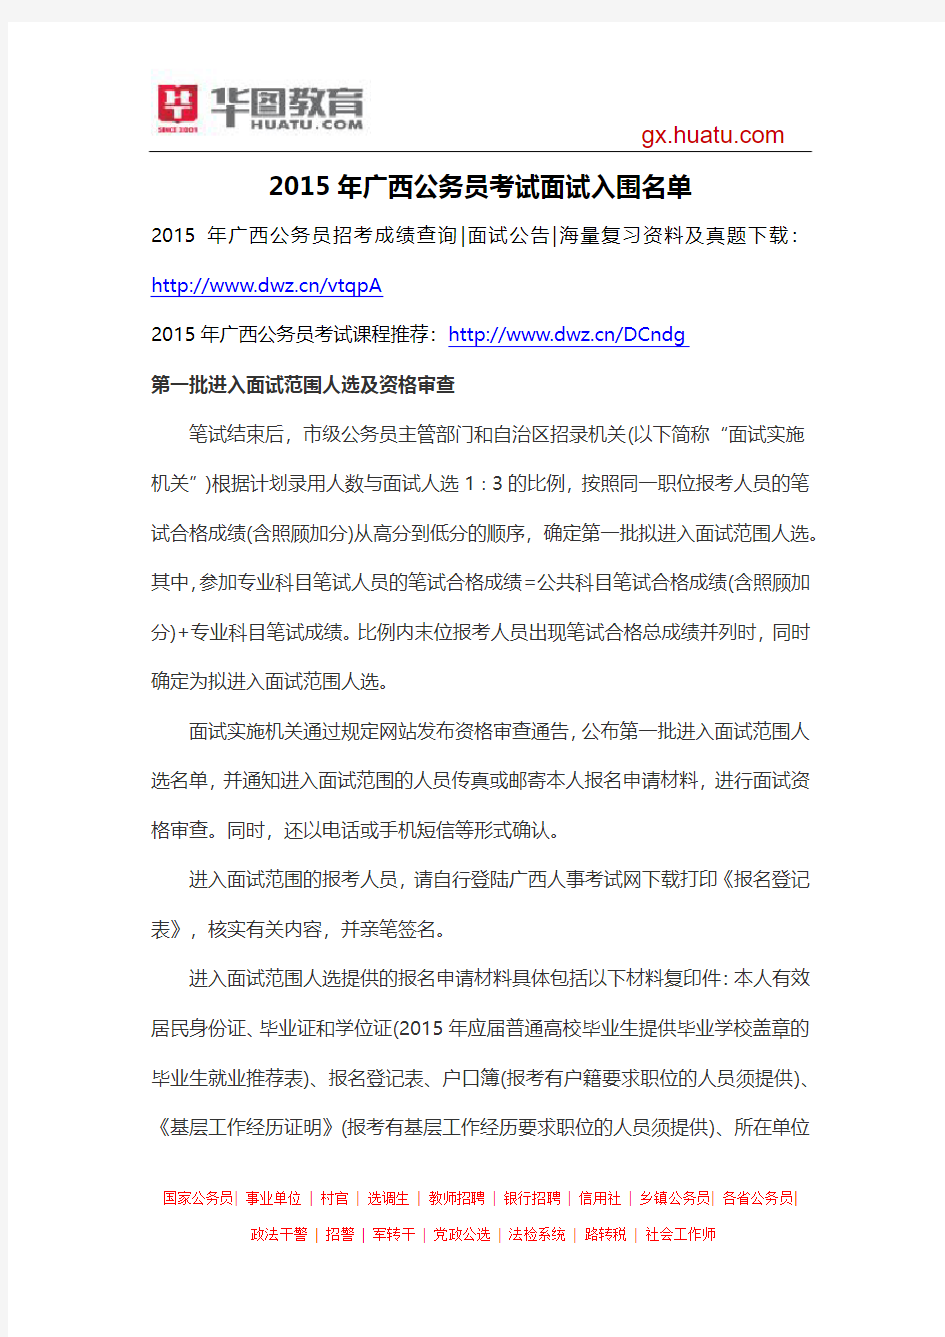 2015年广西公务员考试面试入围名单